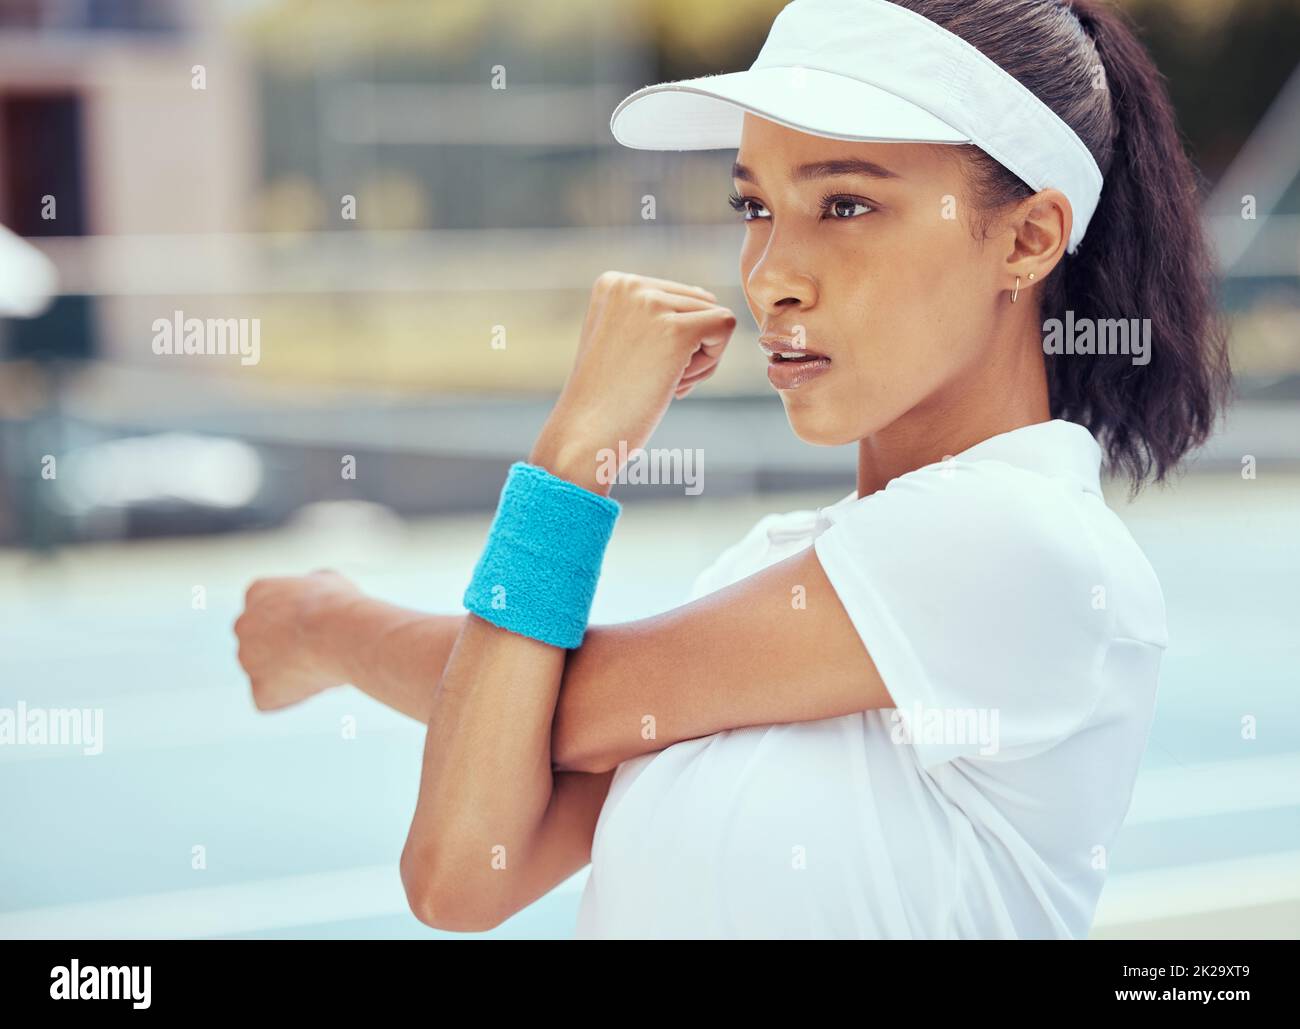 Mujer de tenis, deporte de competición y ejercicios de calentamiento con un jugador estirando para prepararse para un partido o partido en una cancha al aire libre. Fitness, competición Foto de stock